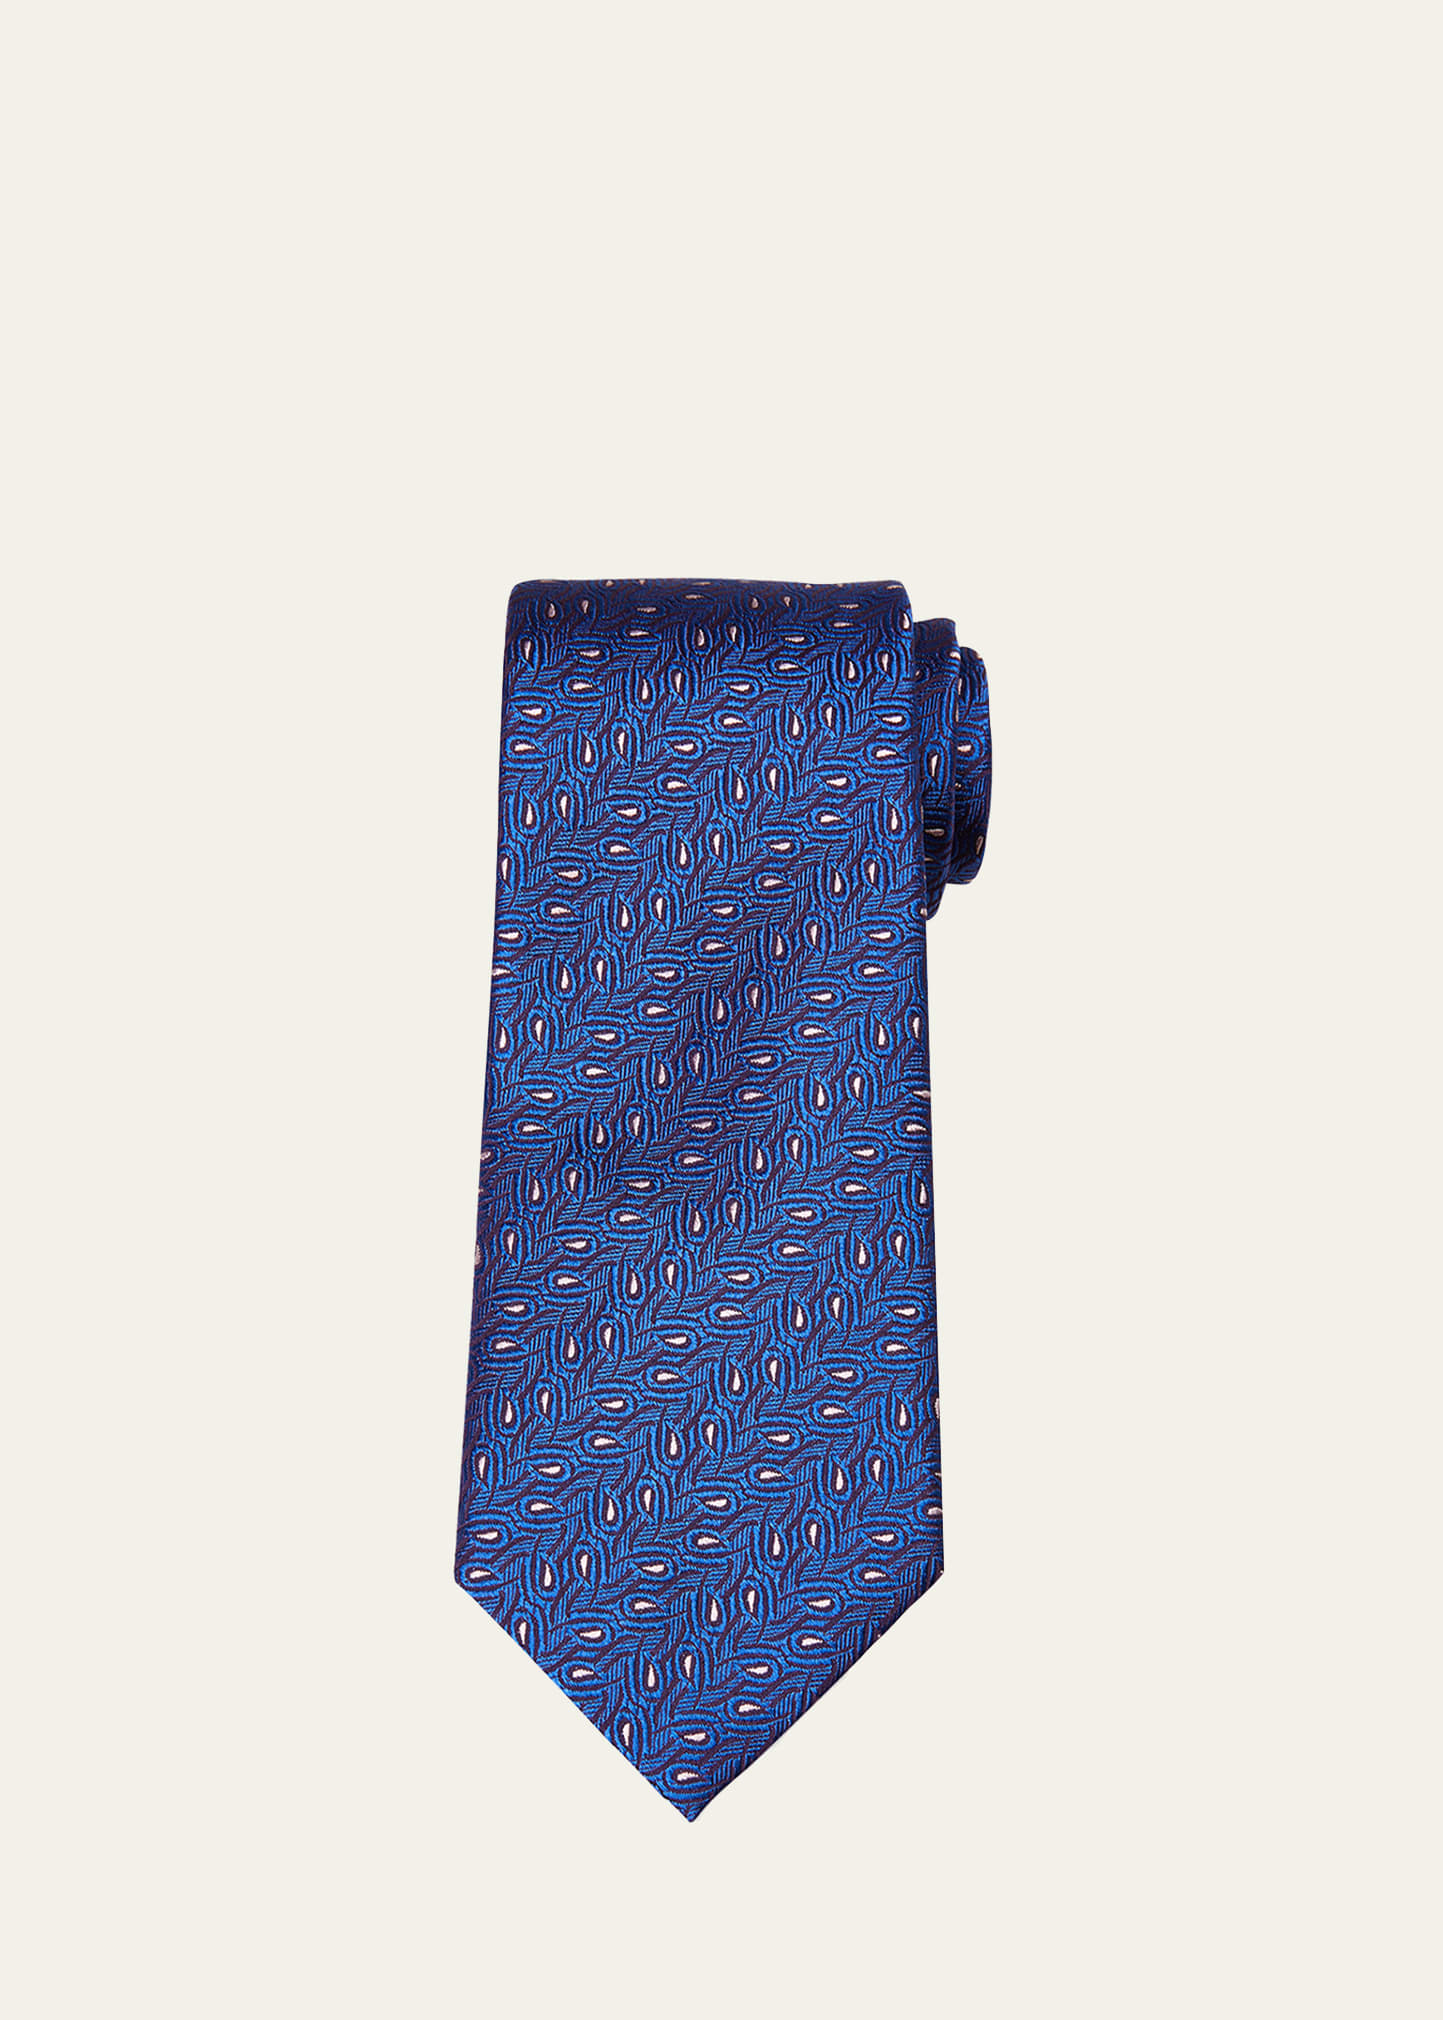 Charvet Men's Jacquard Silk Tie